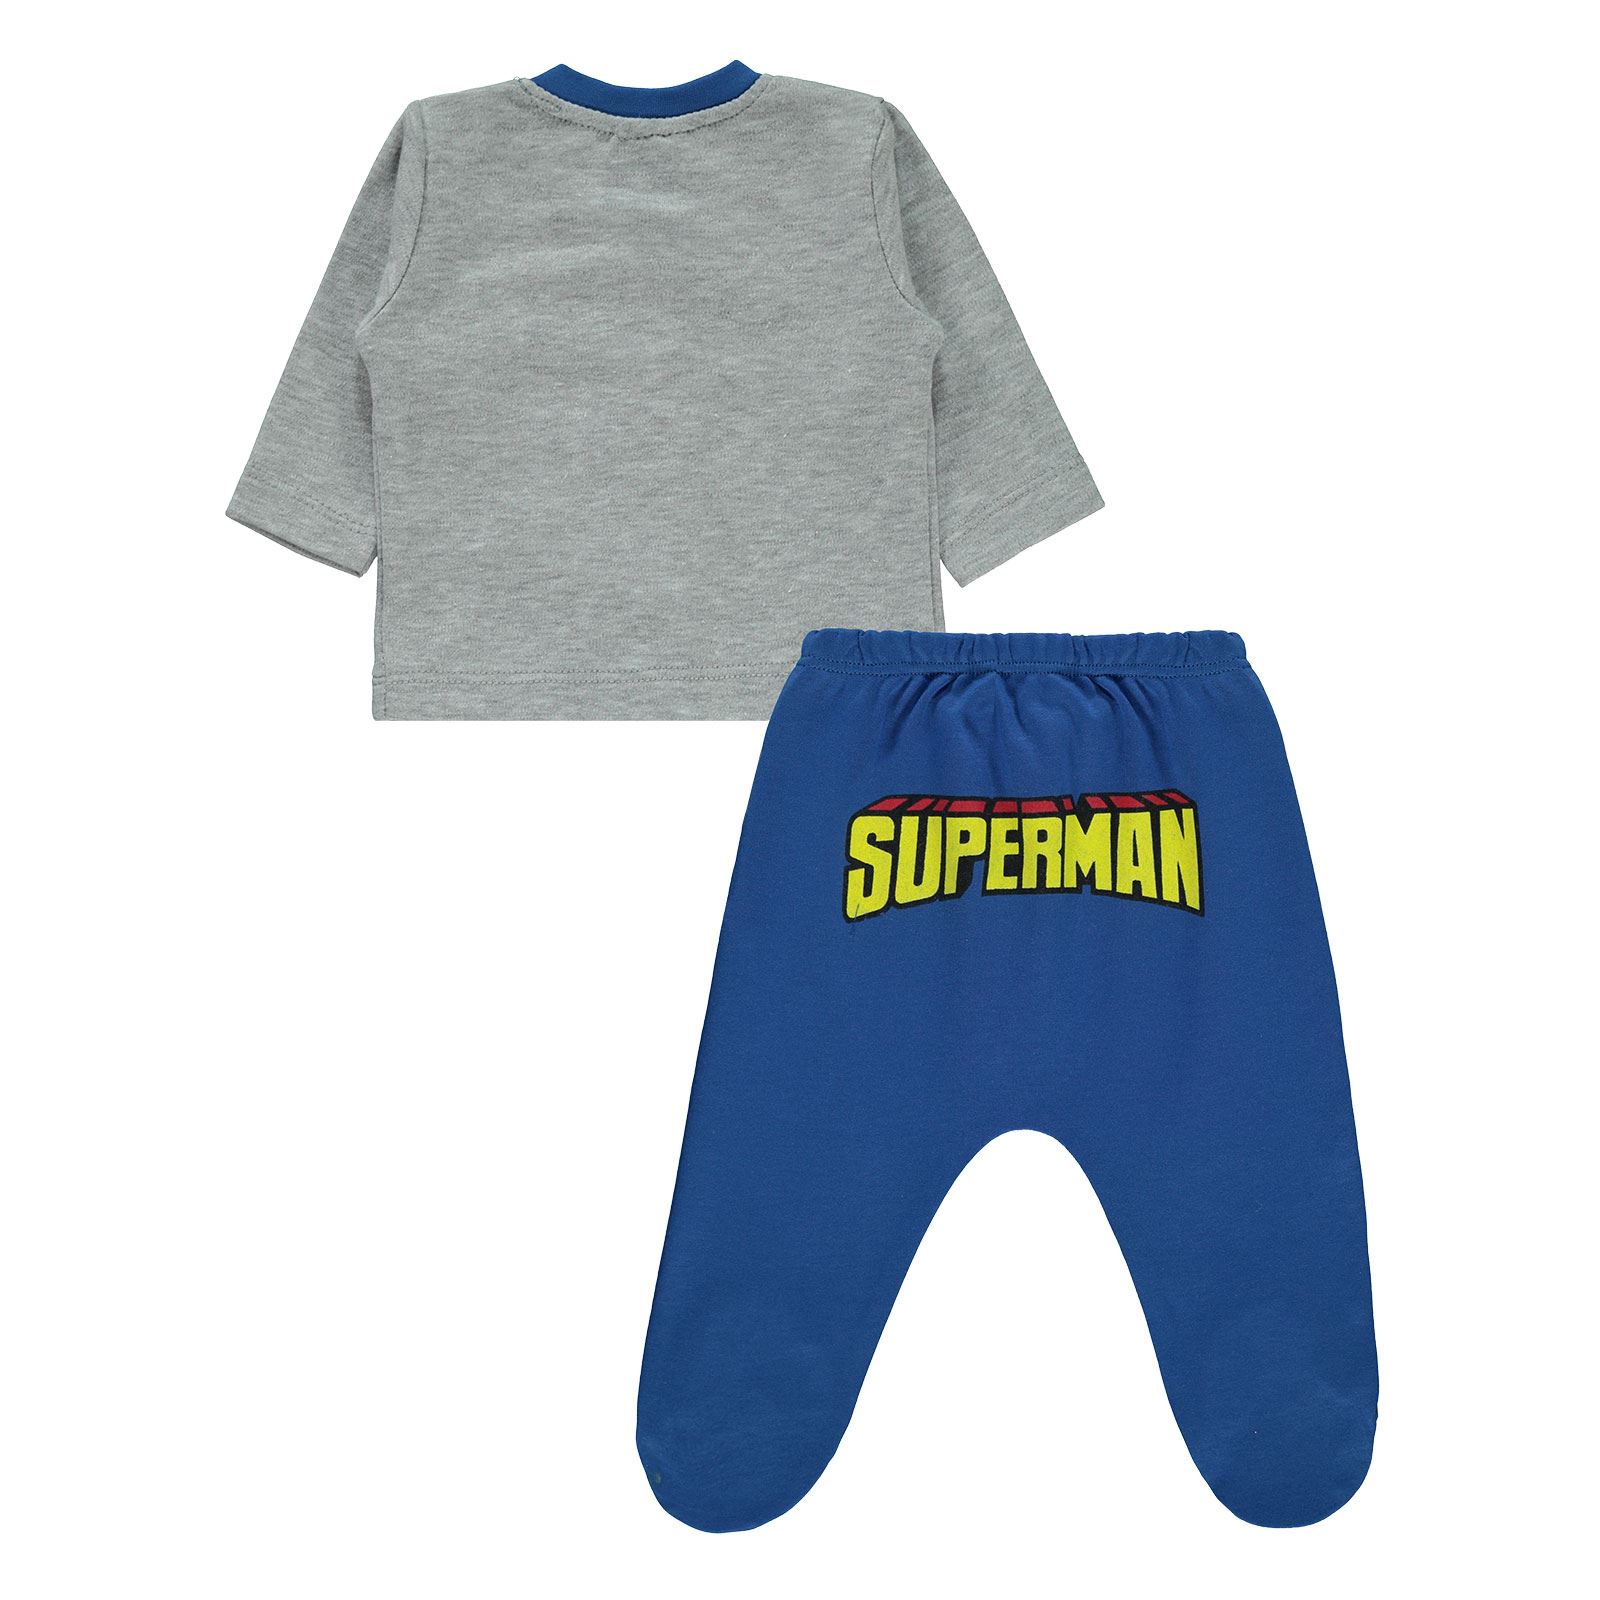 Superman Erkek Bebek Pijama Takımı 0-9 Ay Saks Mavisi